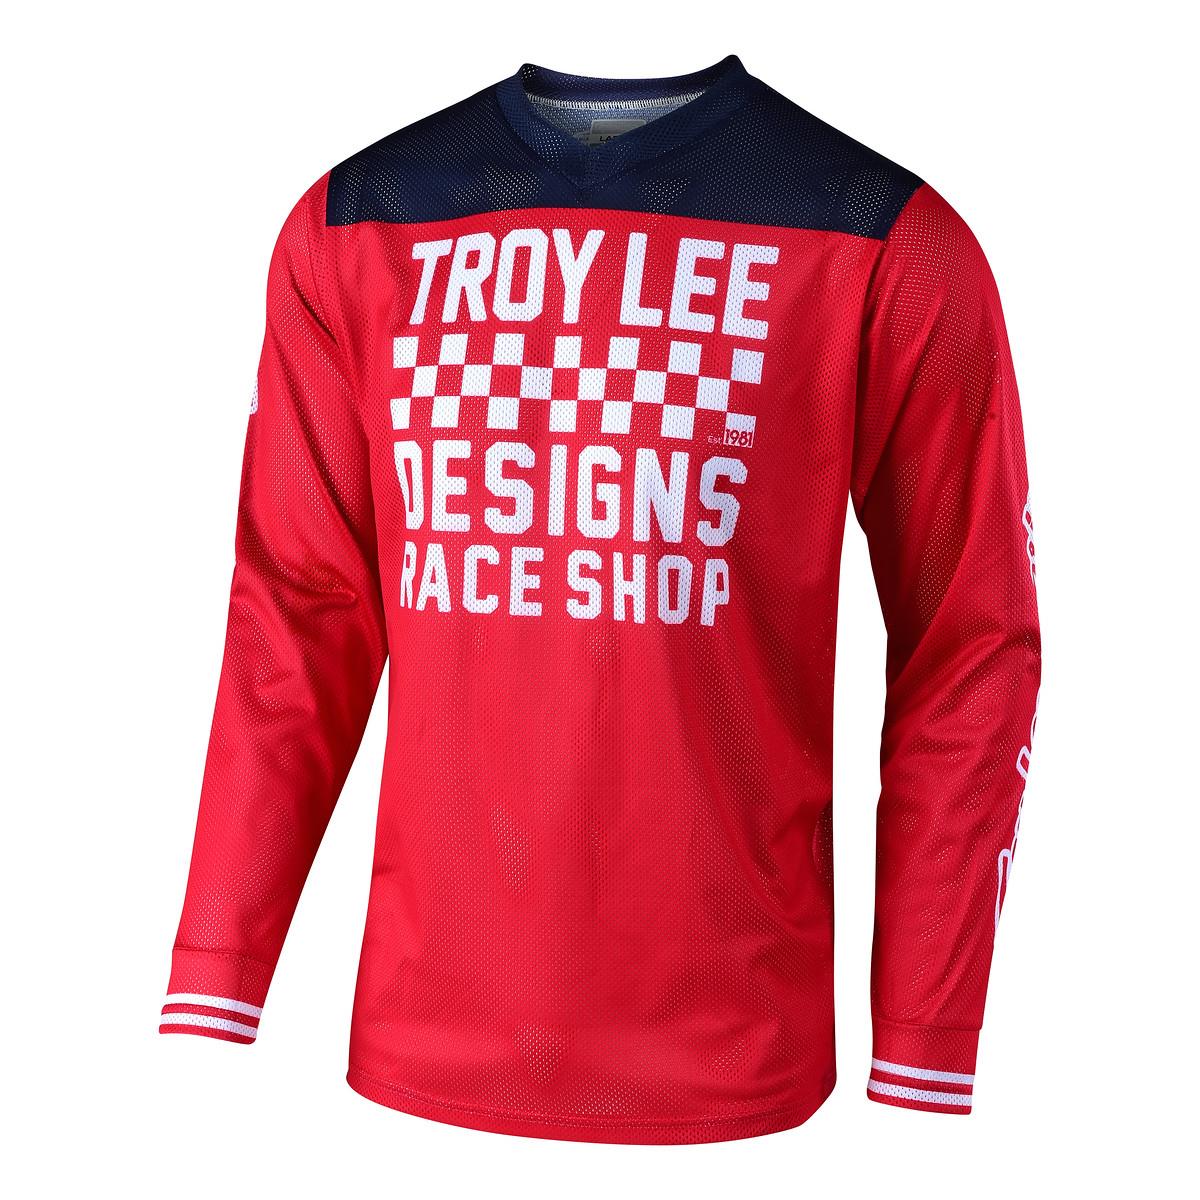 Troy Lee Designs Jersey GP Air Raceshop - Red